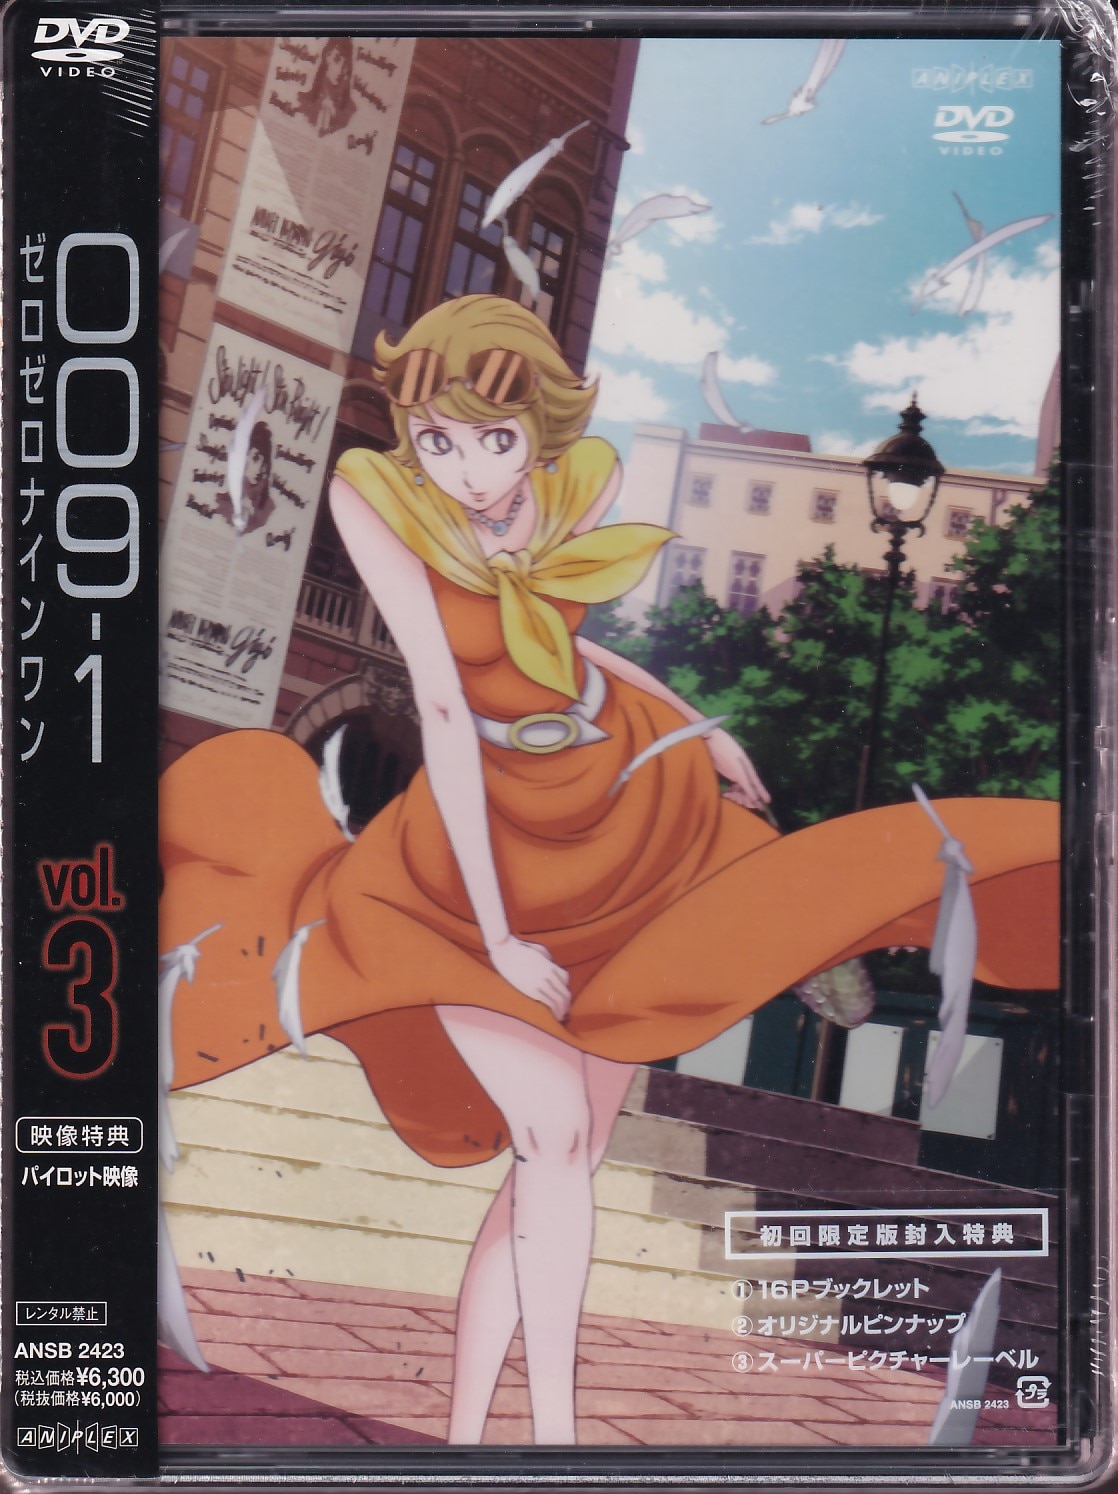 アニメdvd 009 1 ゼロゼロナインワン Vol 3 まんだらけ Mandarake